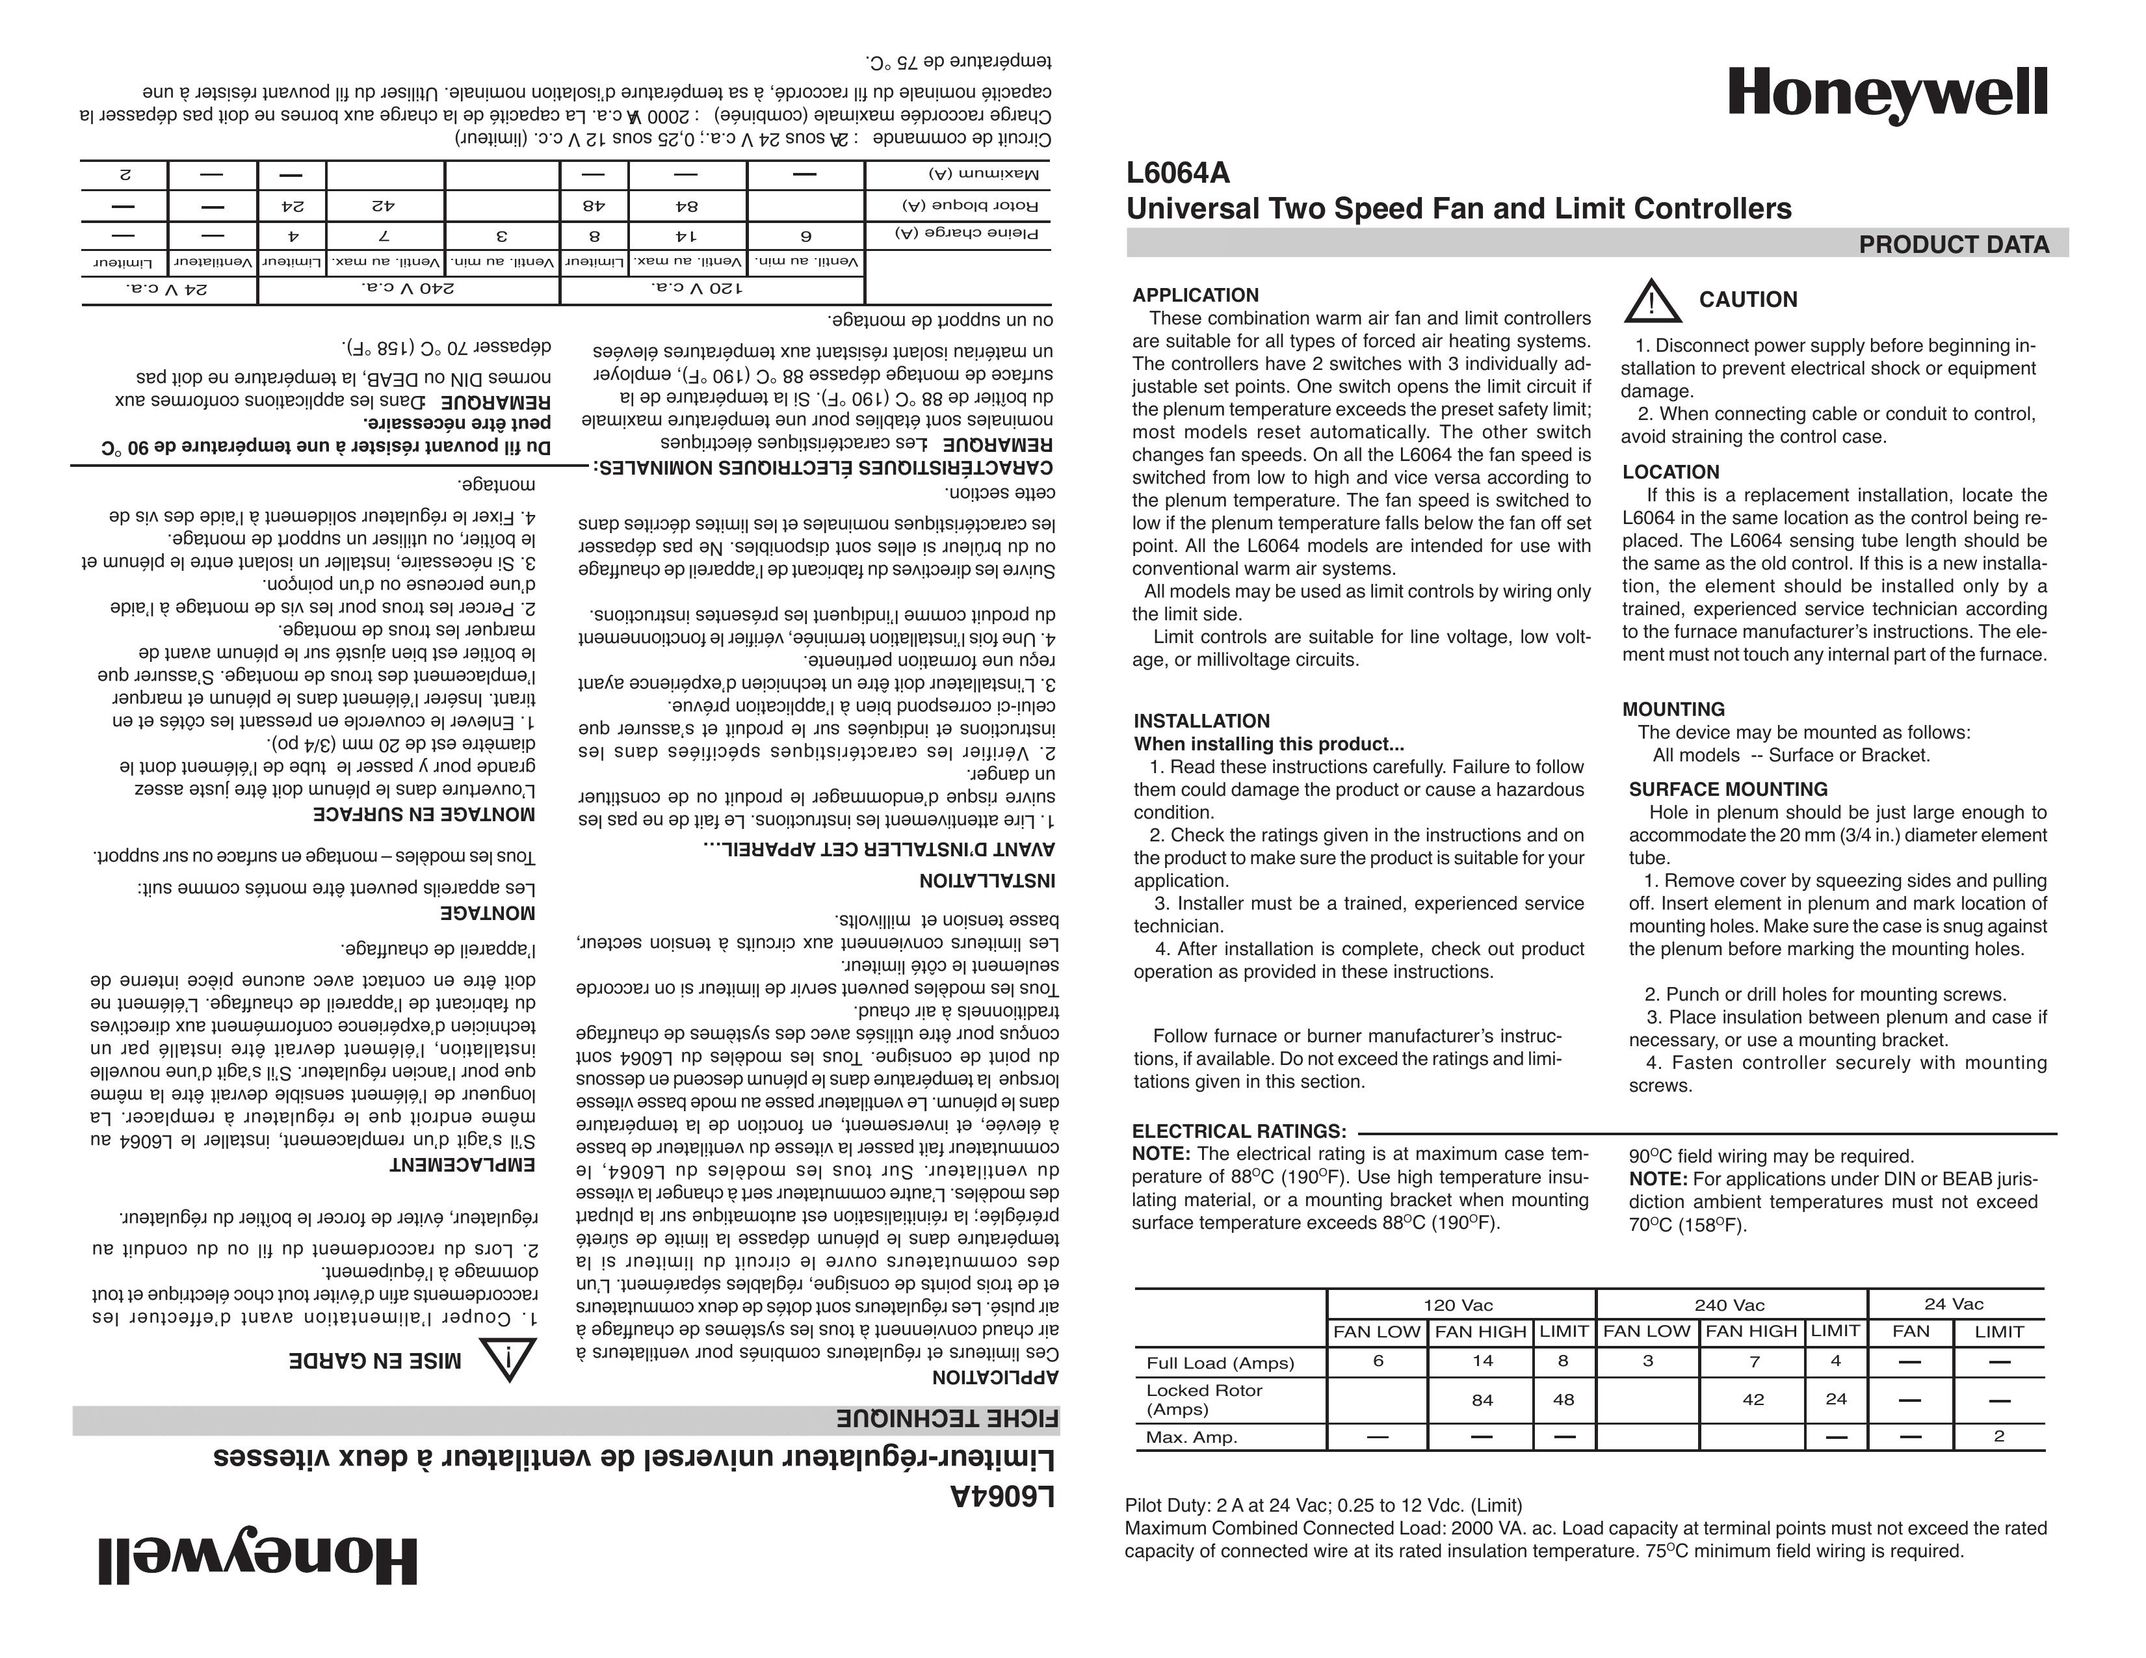 Honeywell L6064A Fan User Manual